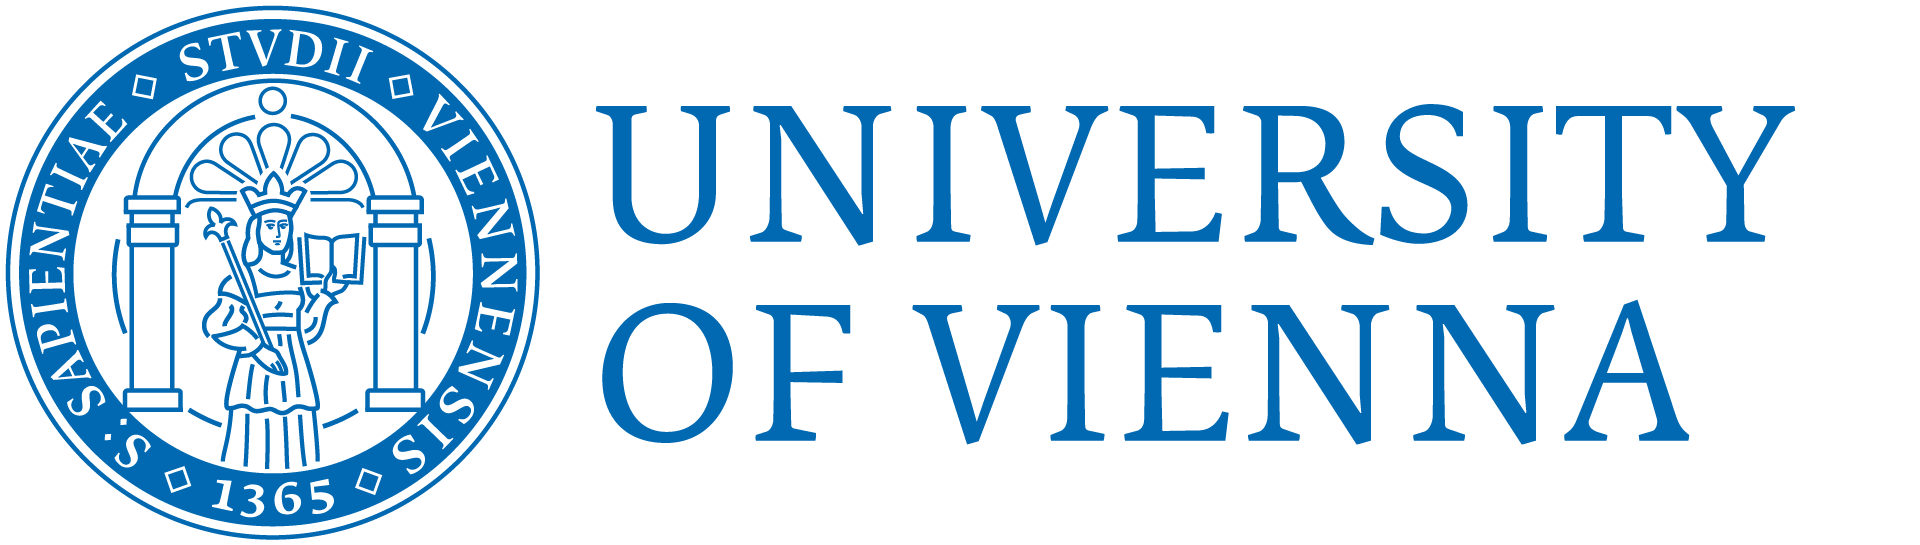 סינה אוטו | מיתוג של אוניברסיטת וינה - עיצוב מחדש של החותם